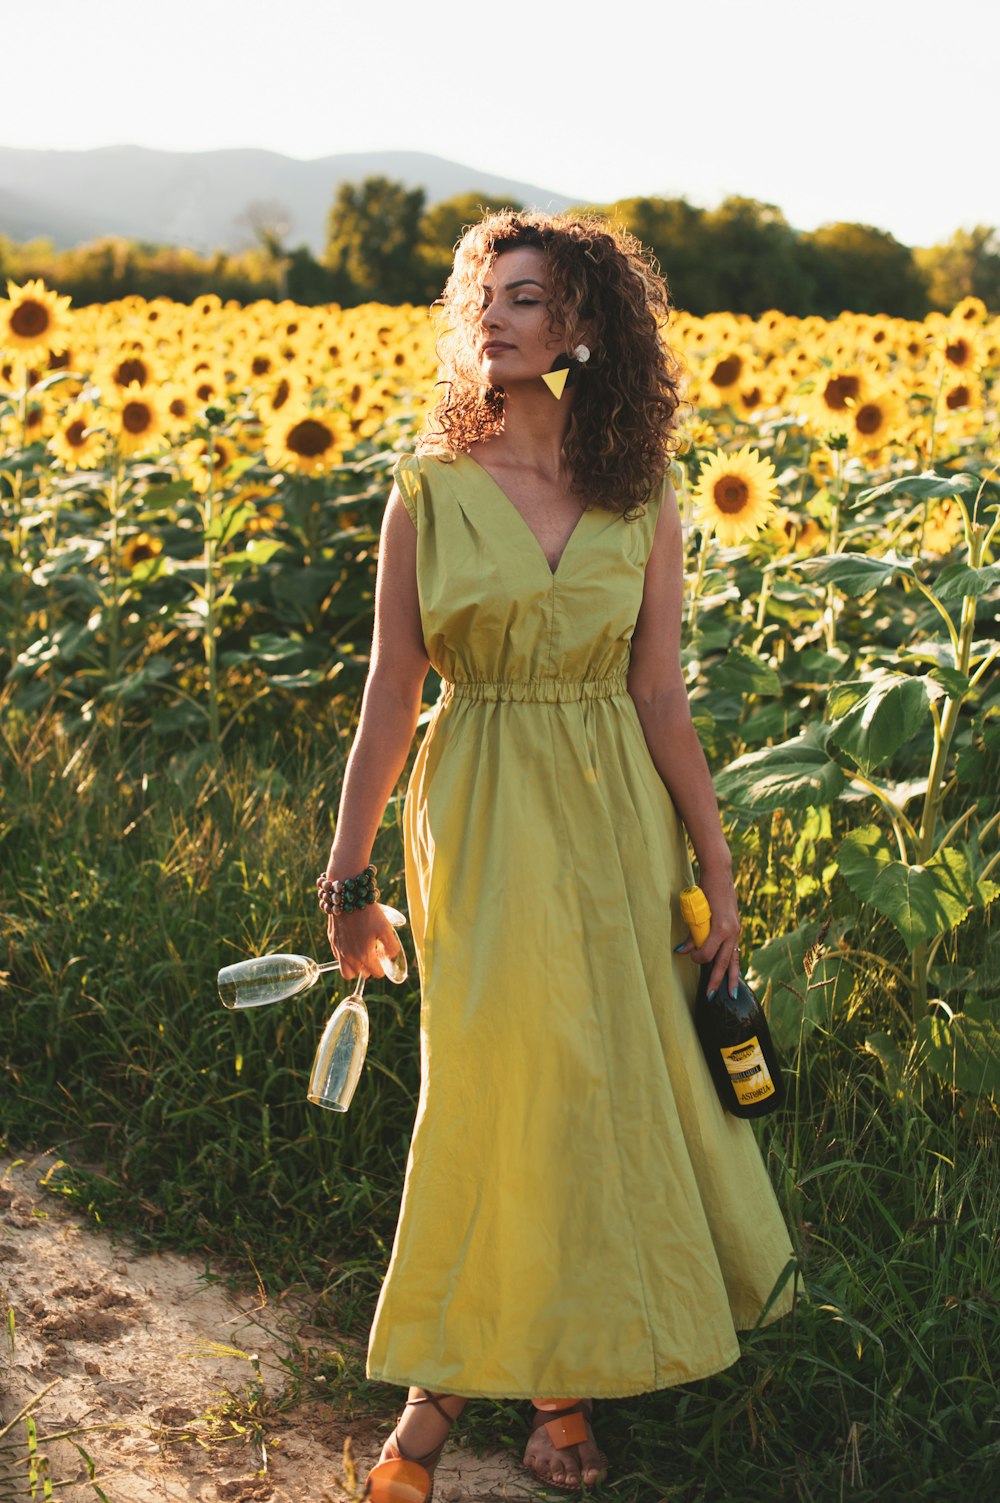 Foto Mujer vestido amarillo sin mangas sosteniendo un cepillo de pelo blanco y negro de pie en un campo de flores amarillas Imagen Italia gratis en Unsplash